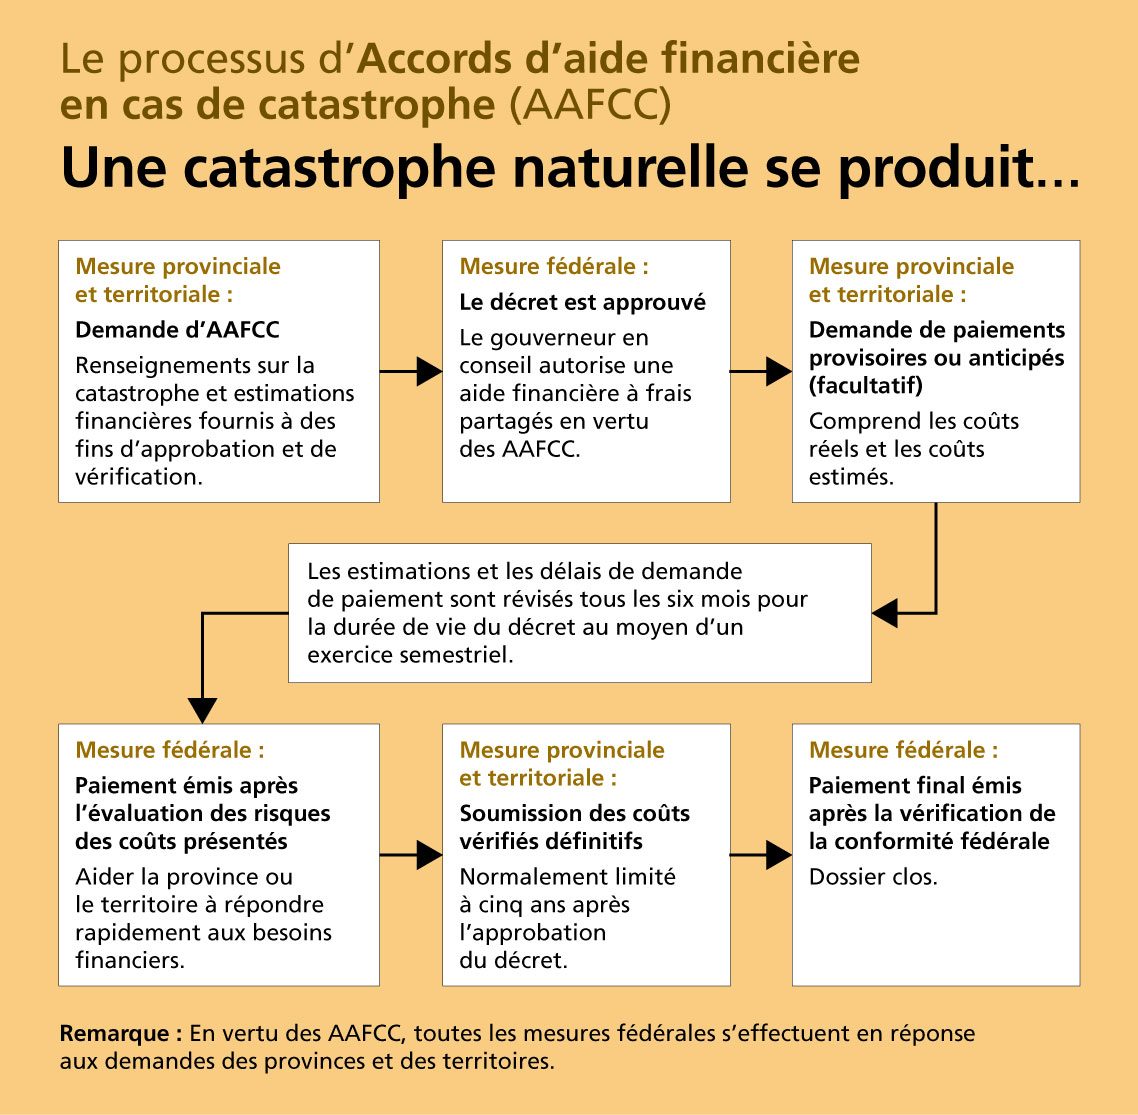 Organigramme du processus d'Accords d'aide financière en cas de catastrophe (AAFCC)